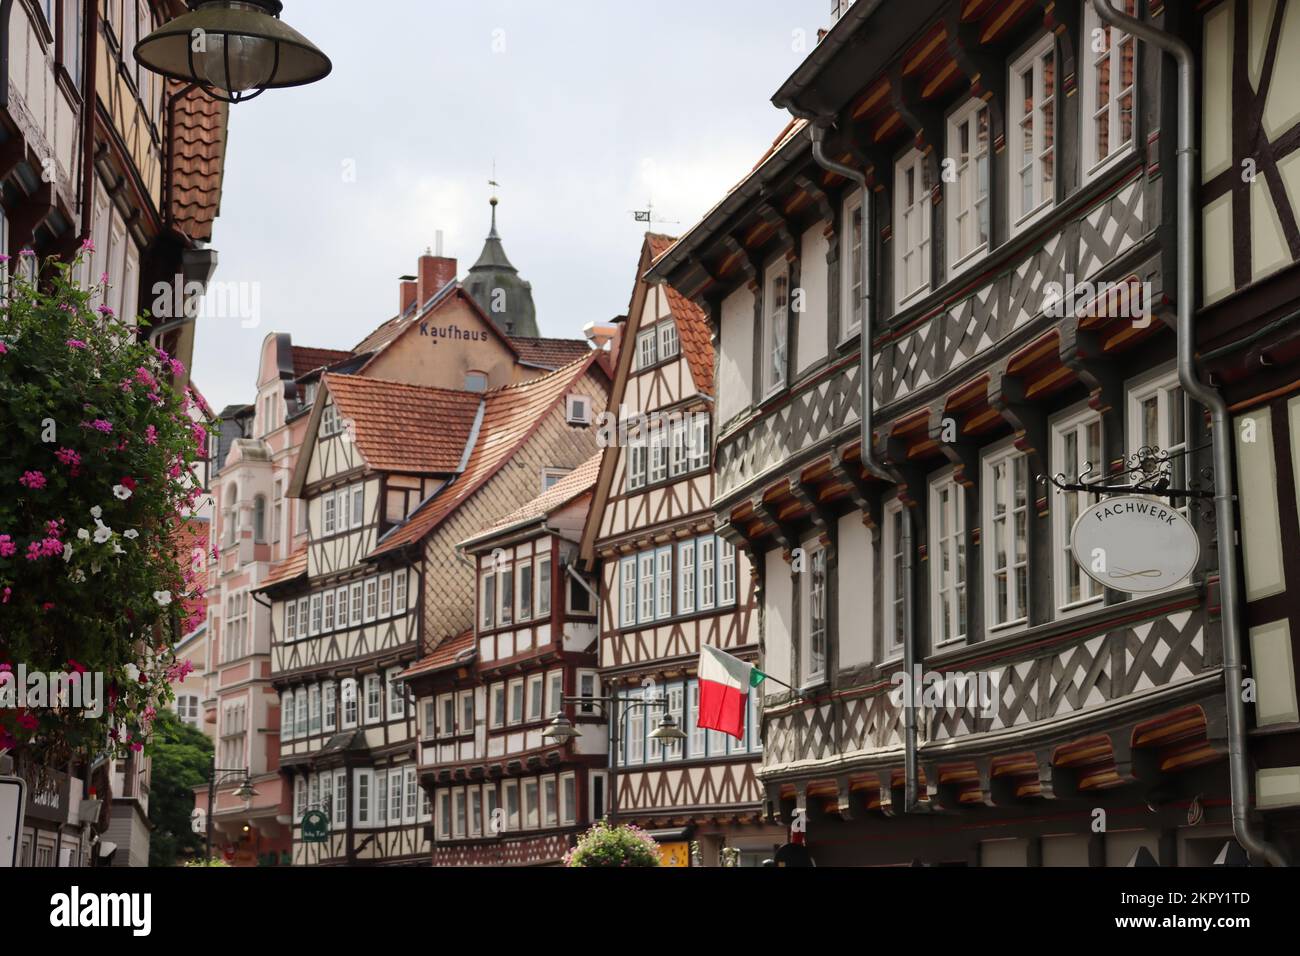 Fachwerkensemble in der historischen Altstadt, Niedersachsen, Deutschland, Hannoversch Münden Stock Photo